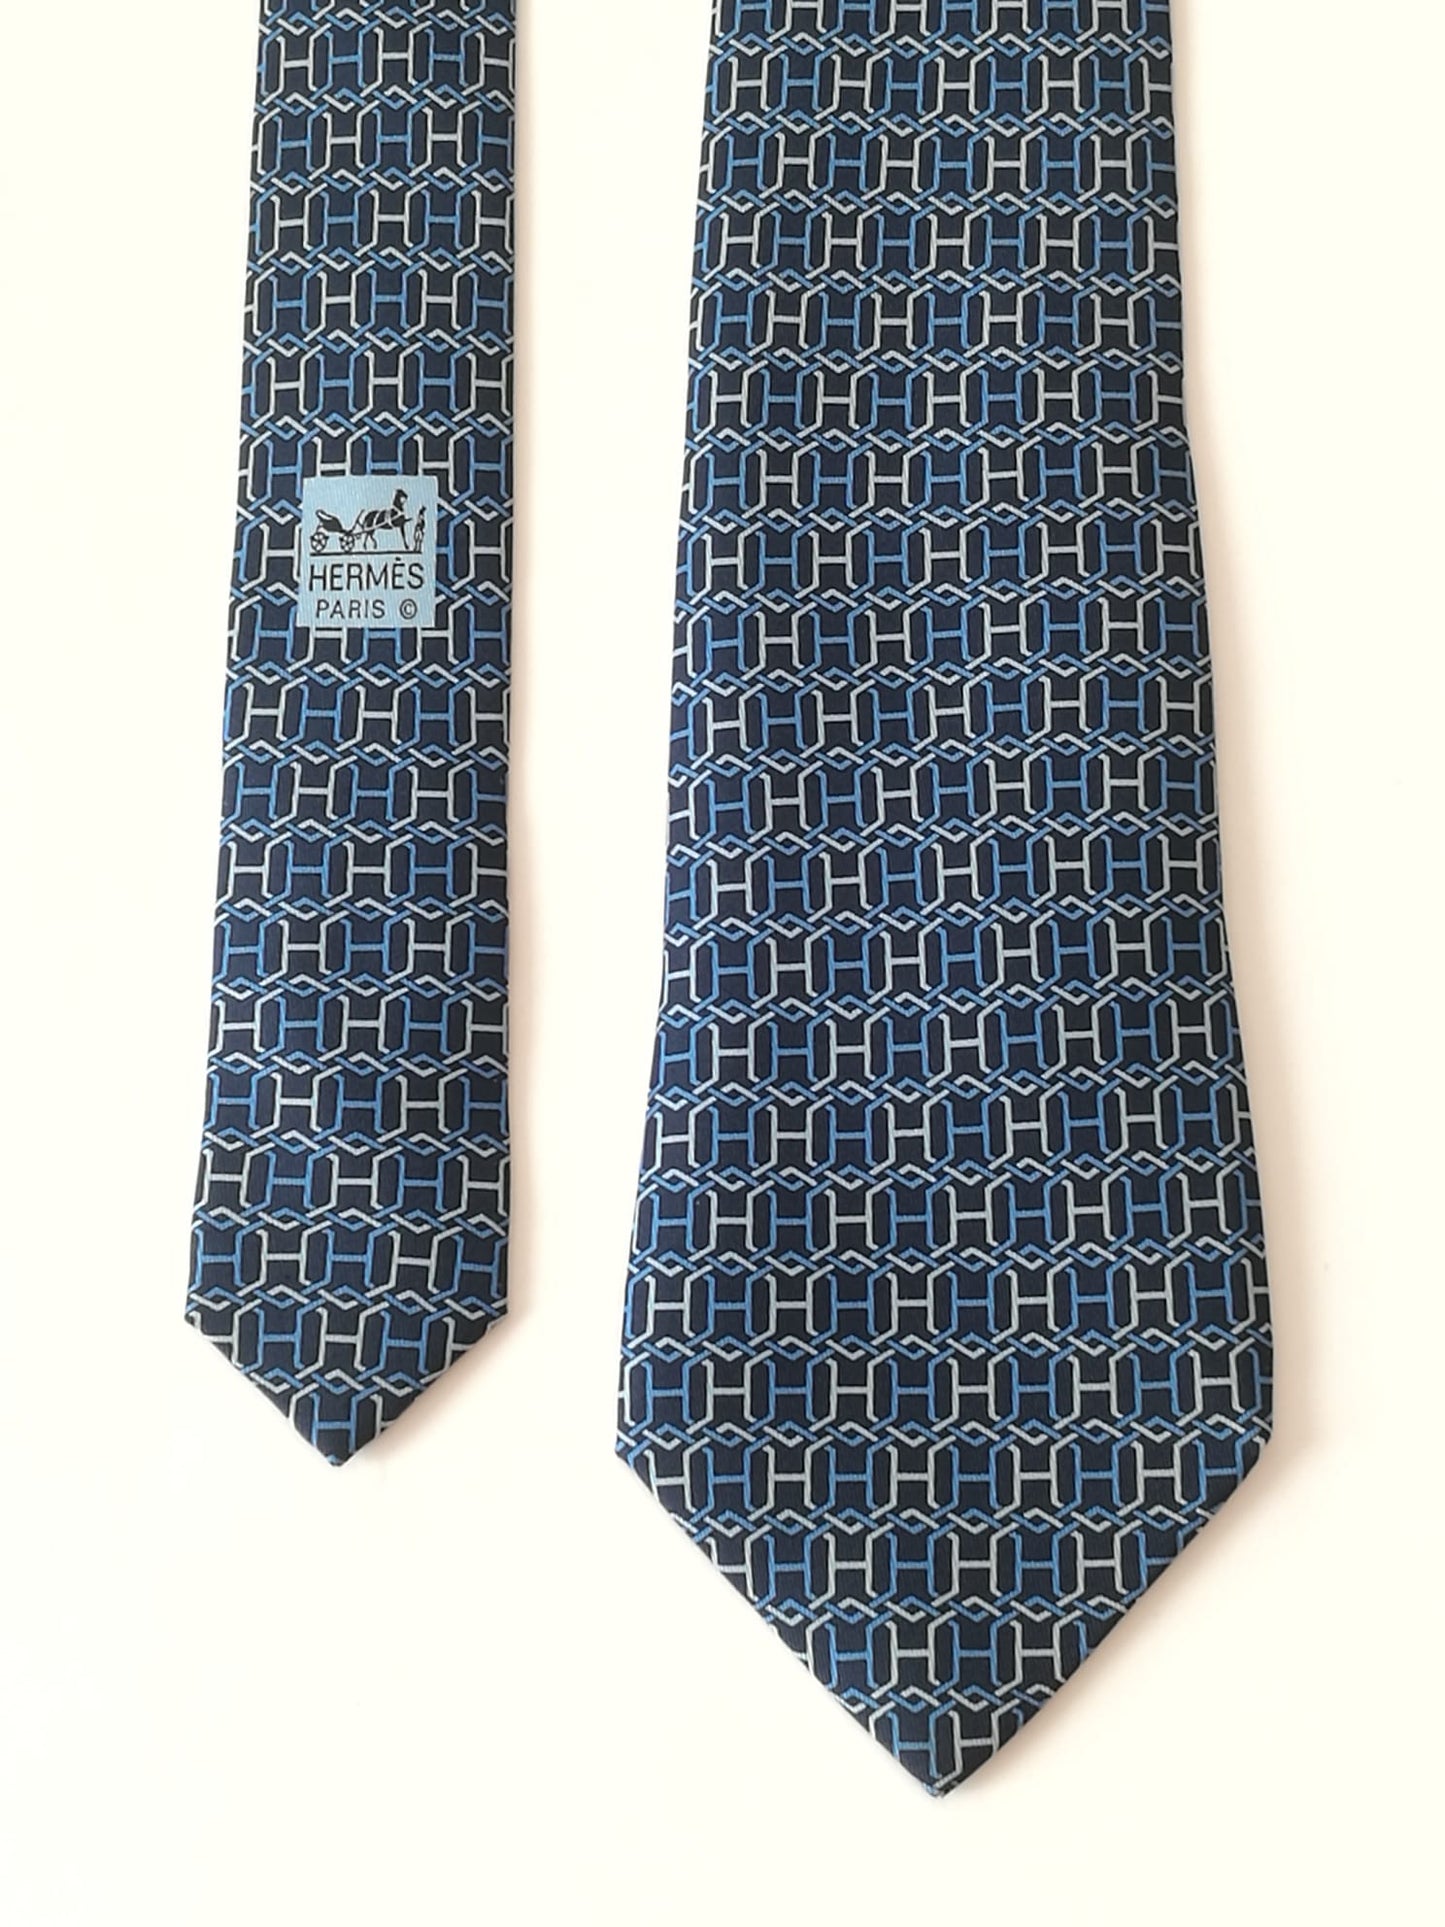 Cravatta Hermes con  H intrecciate in blu e bianco.